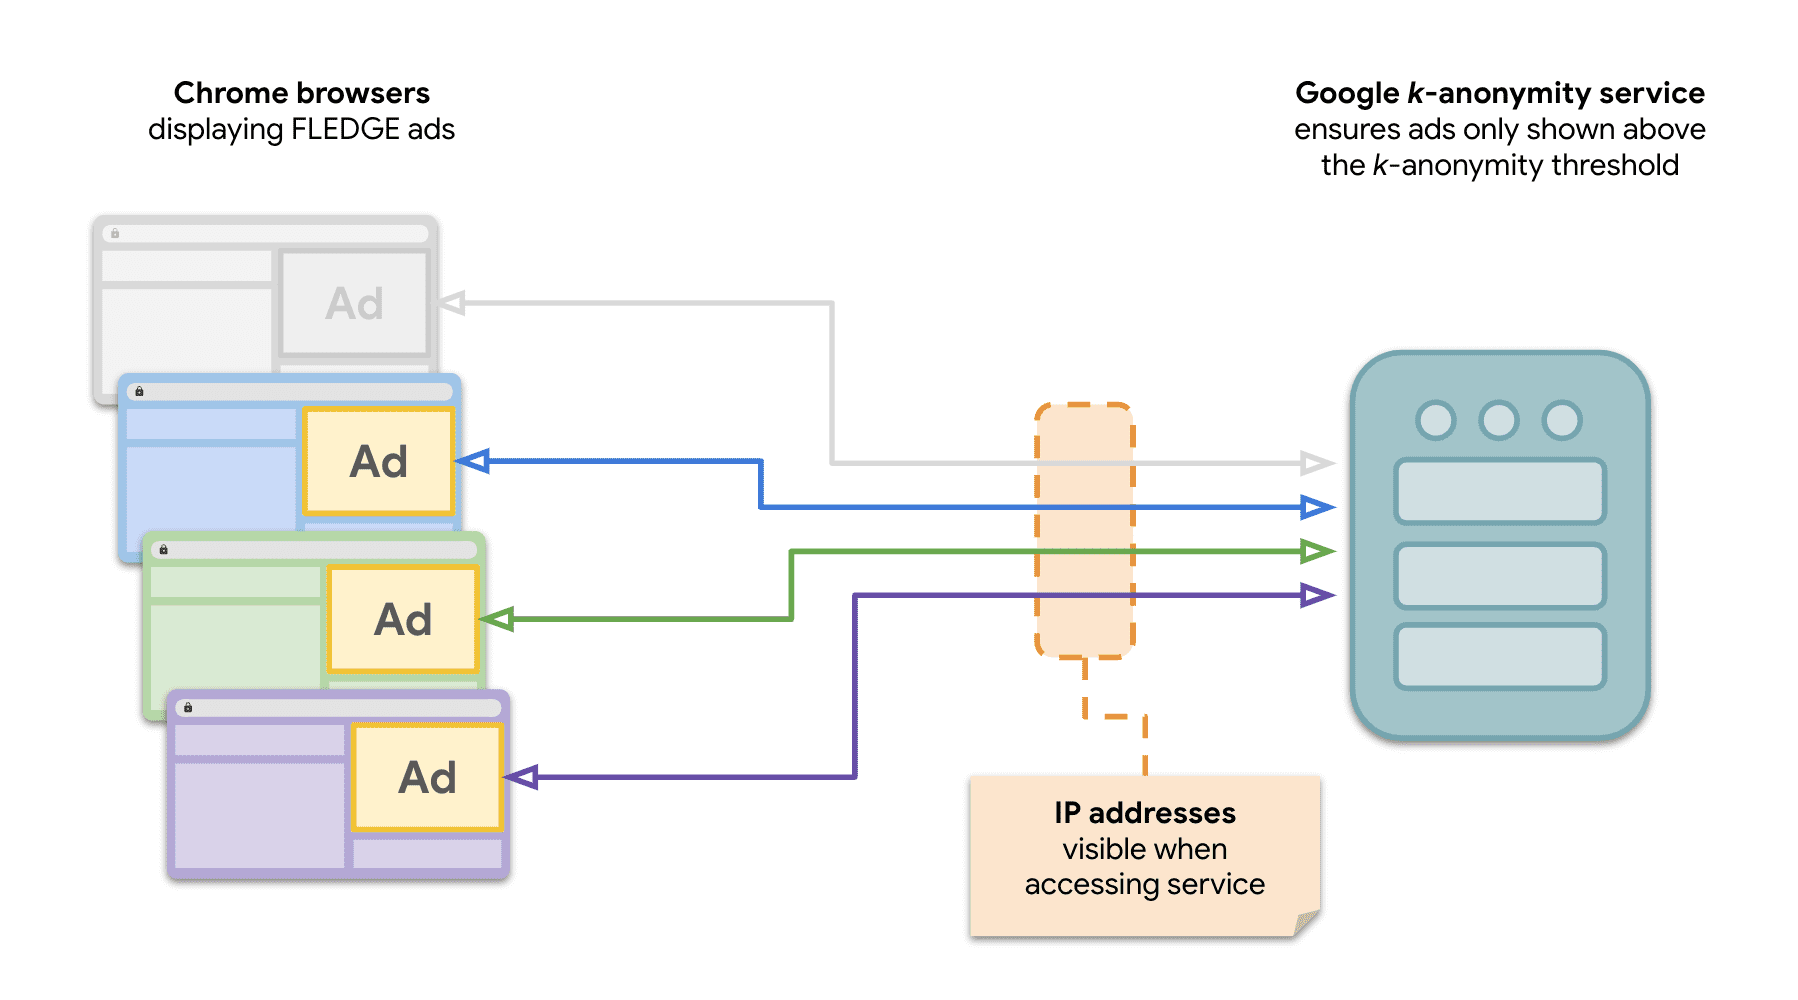 Diagram pokazujący, że wiele witryn w Chrome wysyła żądania do serwera k-anonimowości, aby wyświetlać reklamy FLEDGE.